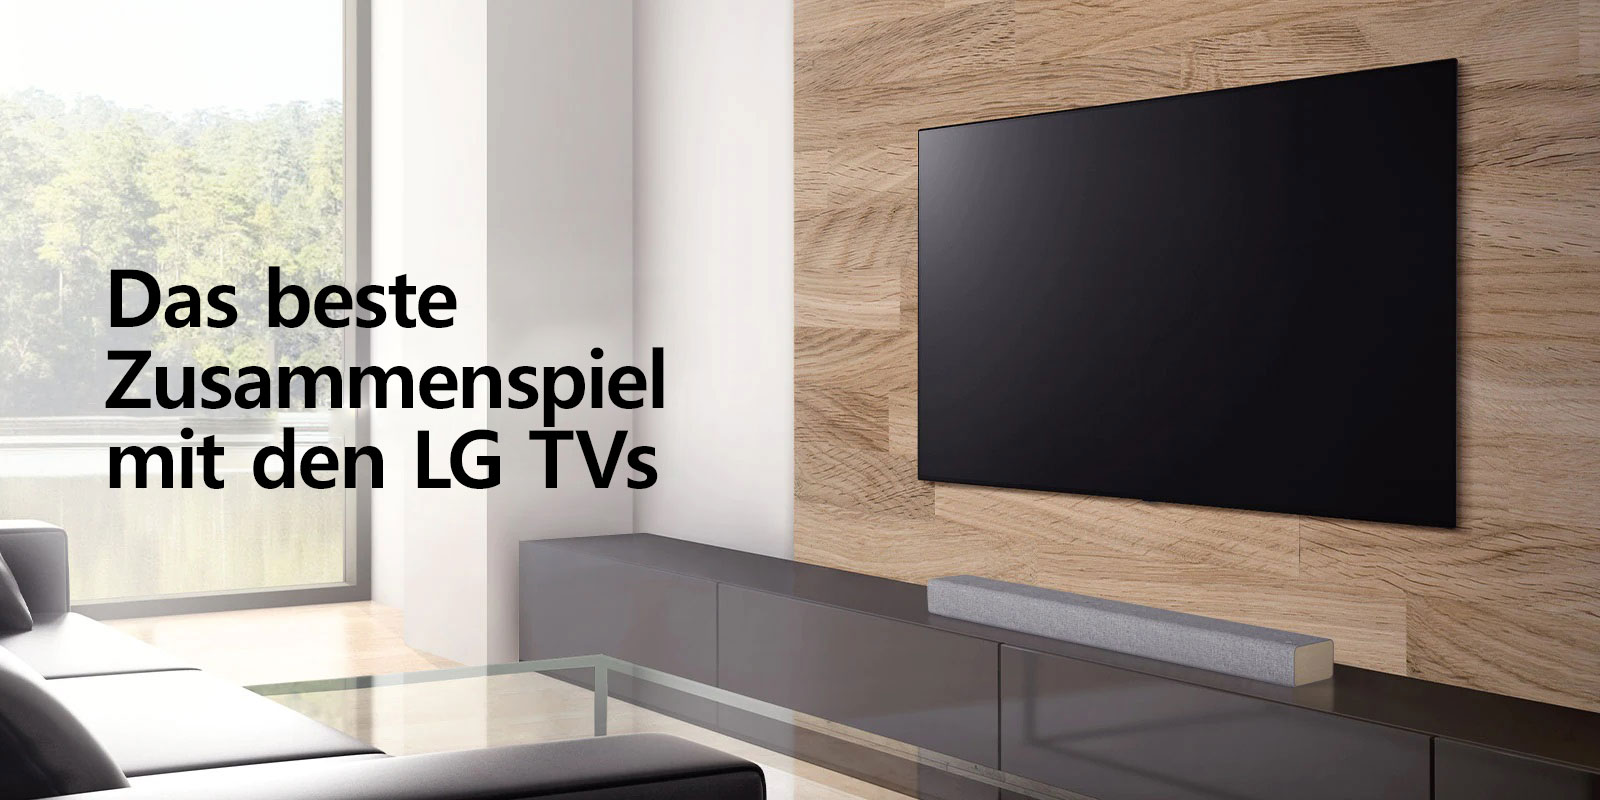 Eine Soundbar steht auf einem weißen TV-Schrank und der Fernseher hängt an einer holzvertäfelten Wand. Draußen sind Bäume zu sehen. Text erscheint auf dem Bild: Das beste Zusammenspiel mit den LG TVs.